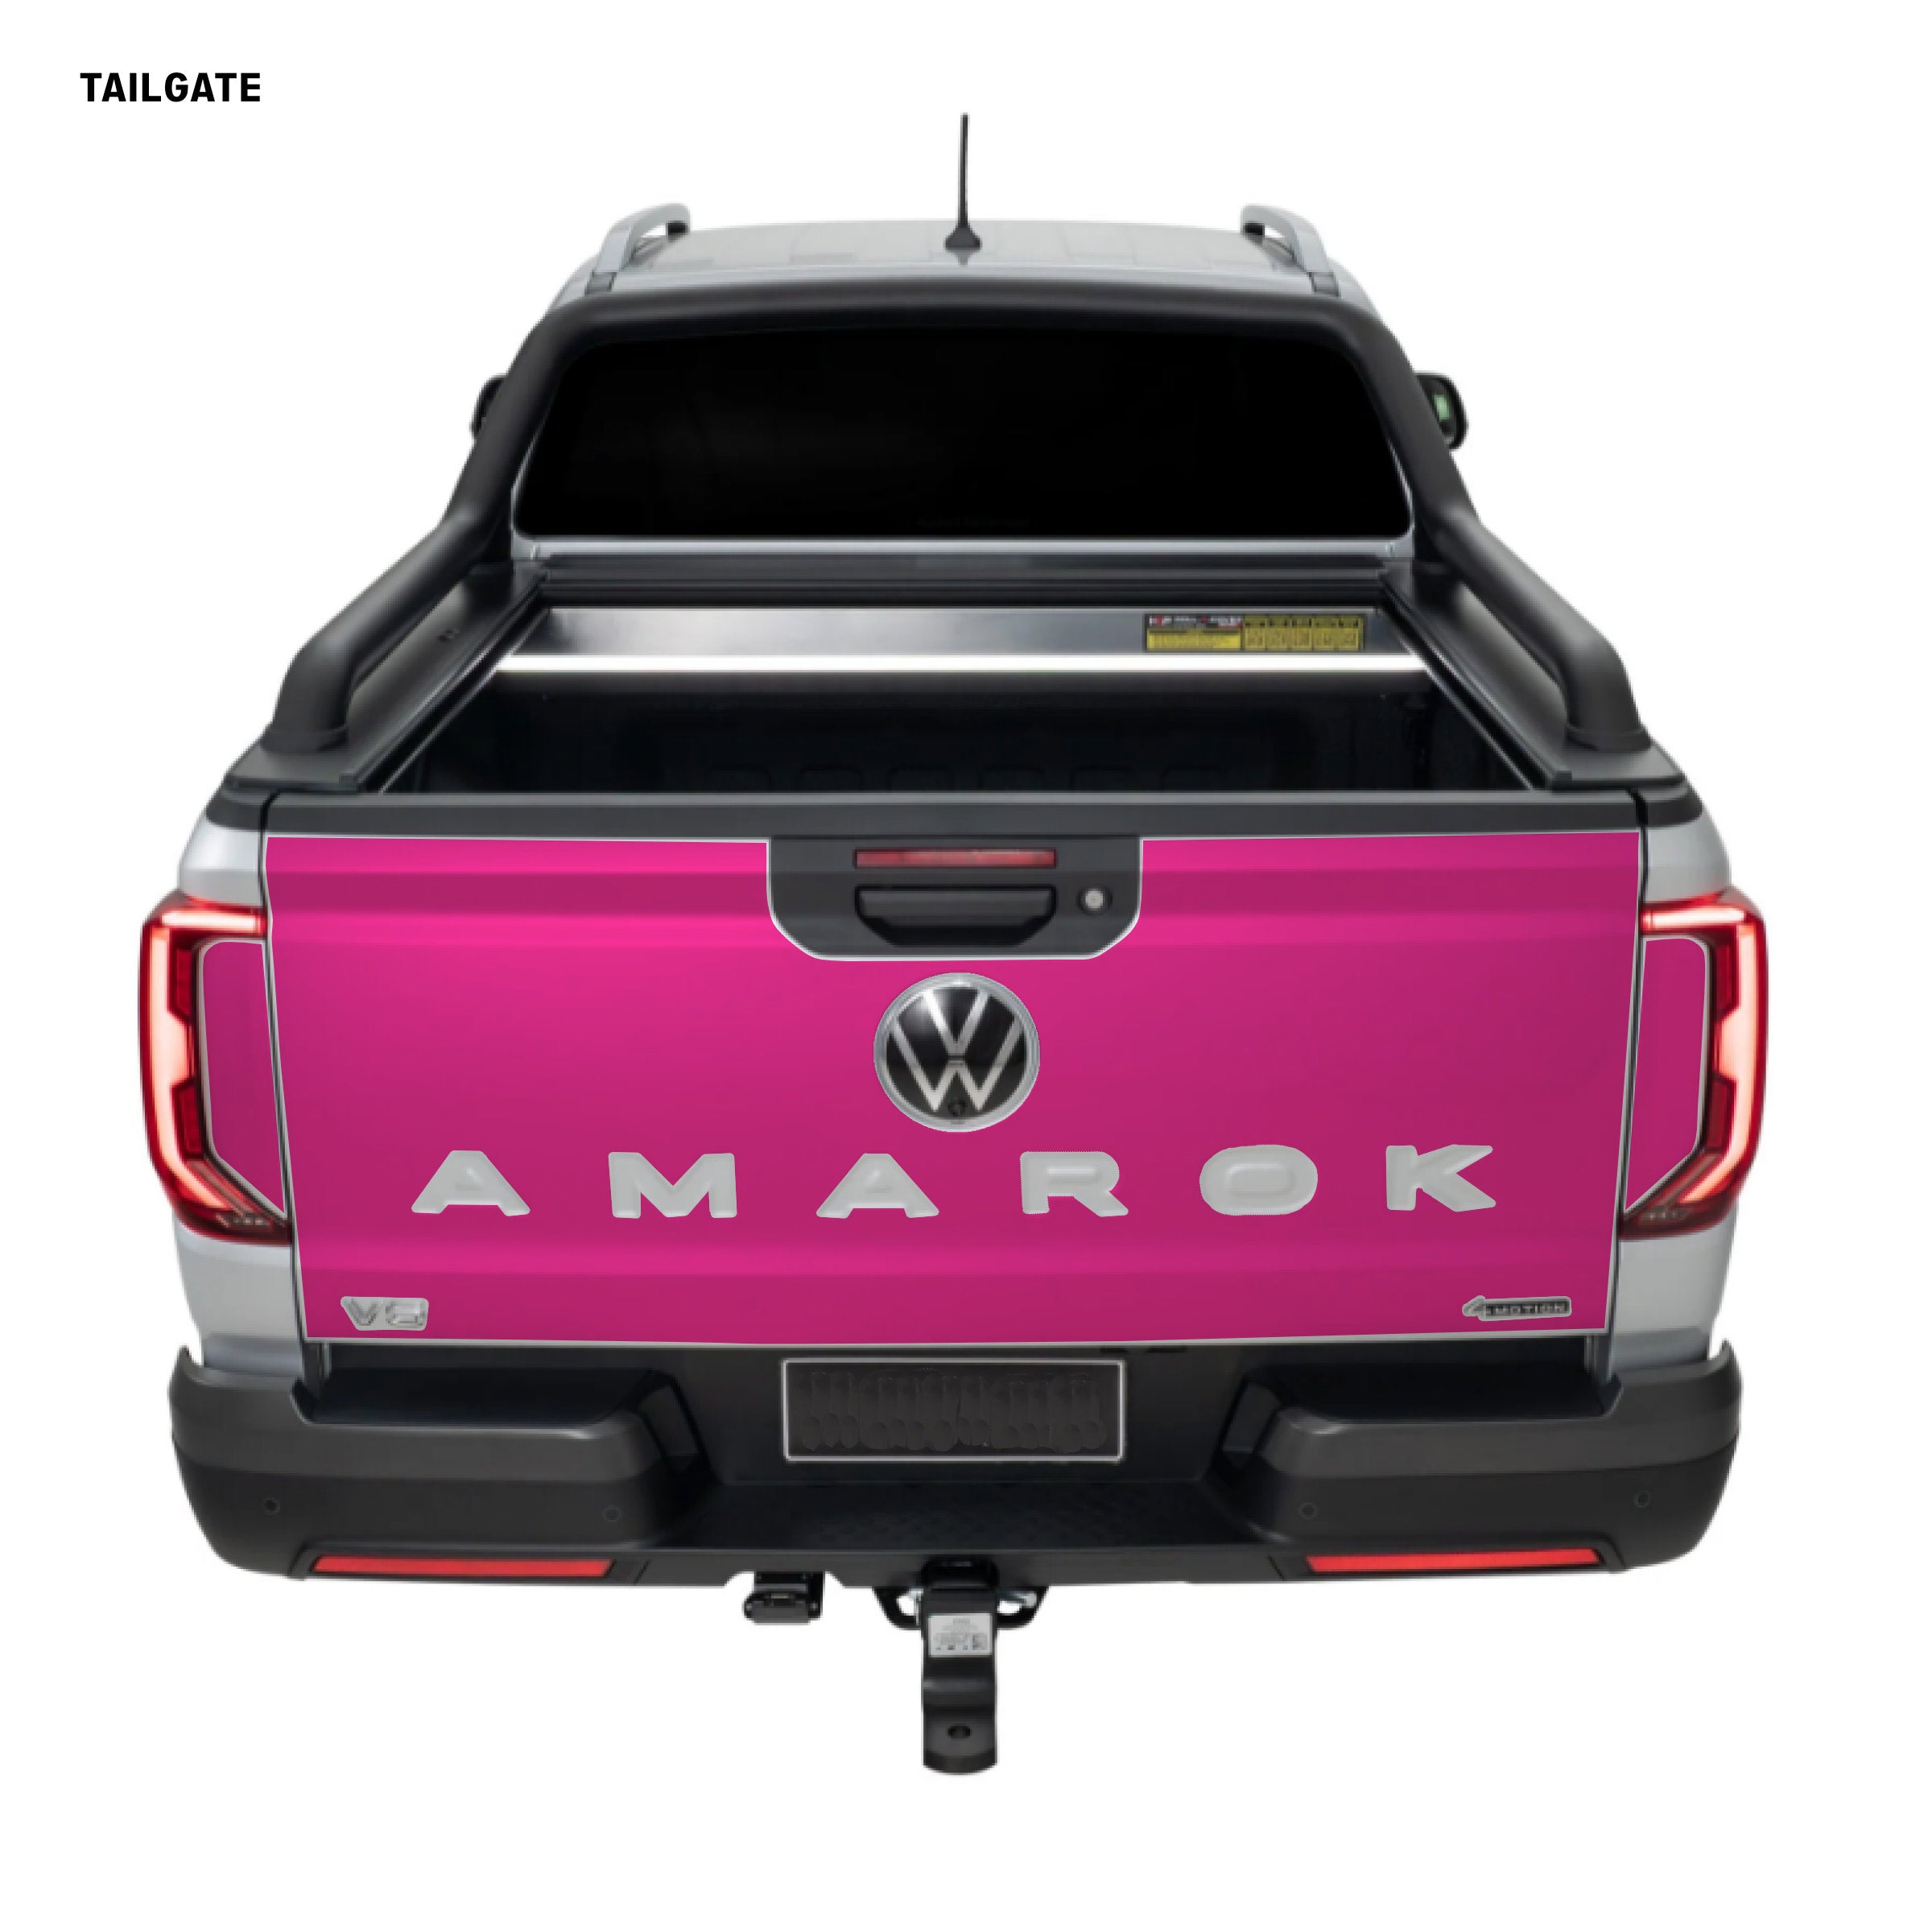 Amarok Facelift Tailgate